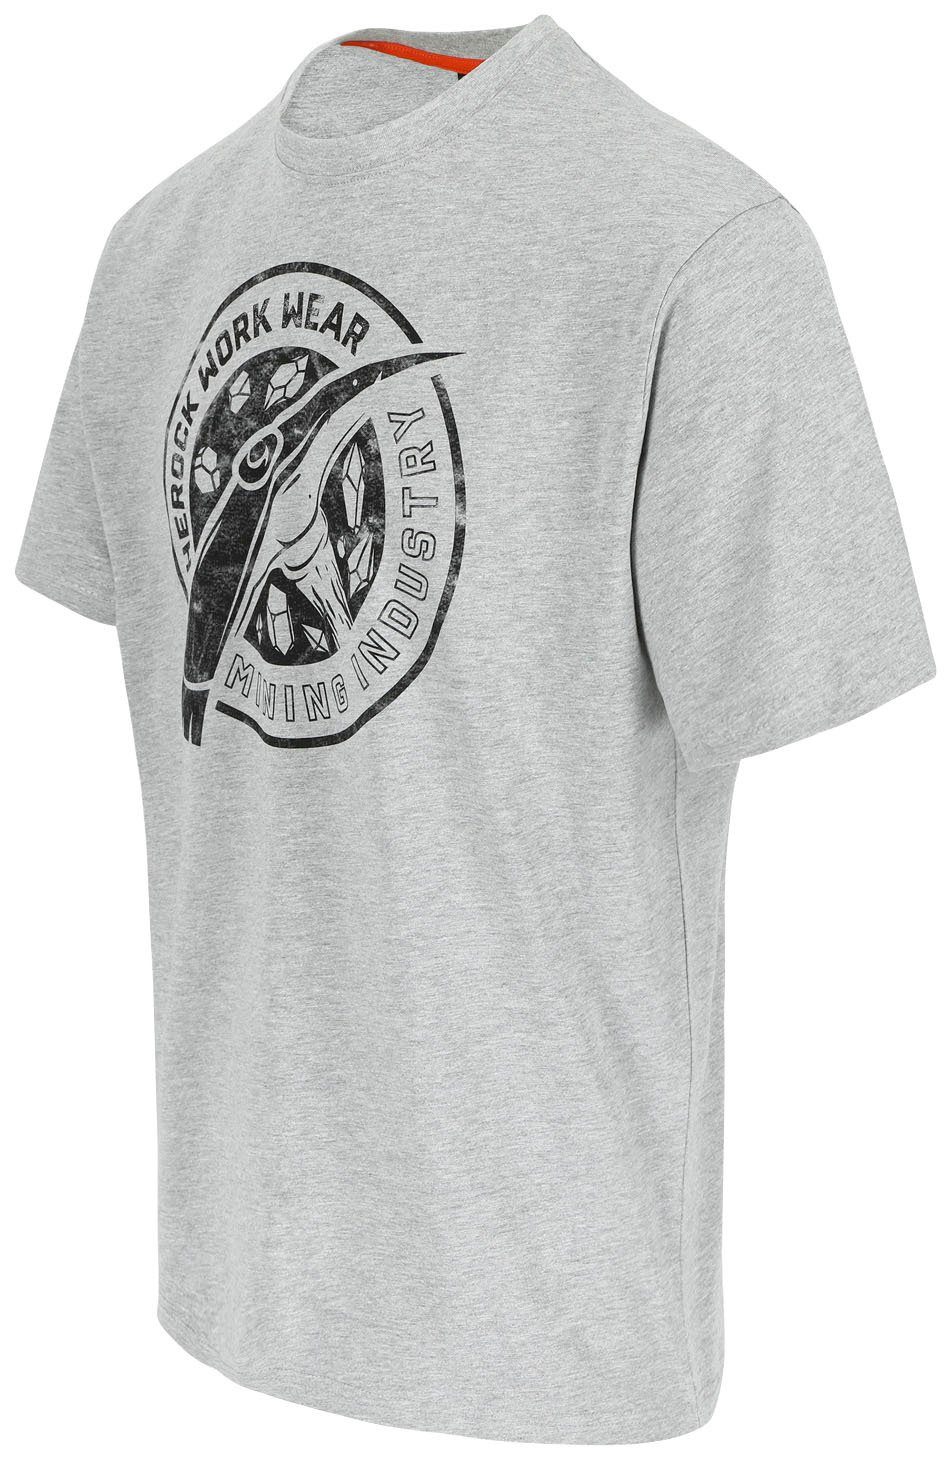 Worker Farben hellgrau erhältlich verschiedene Edition, T-Shirt in Limited Herock